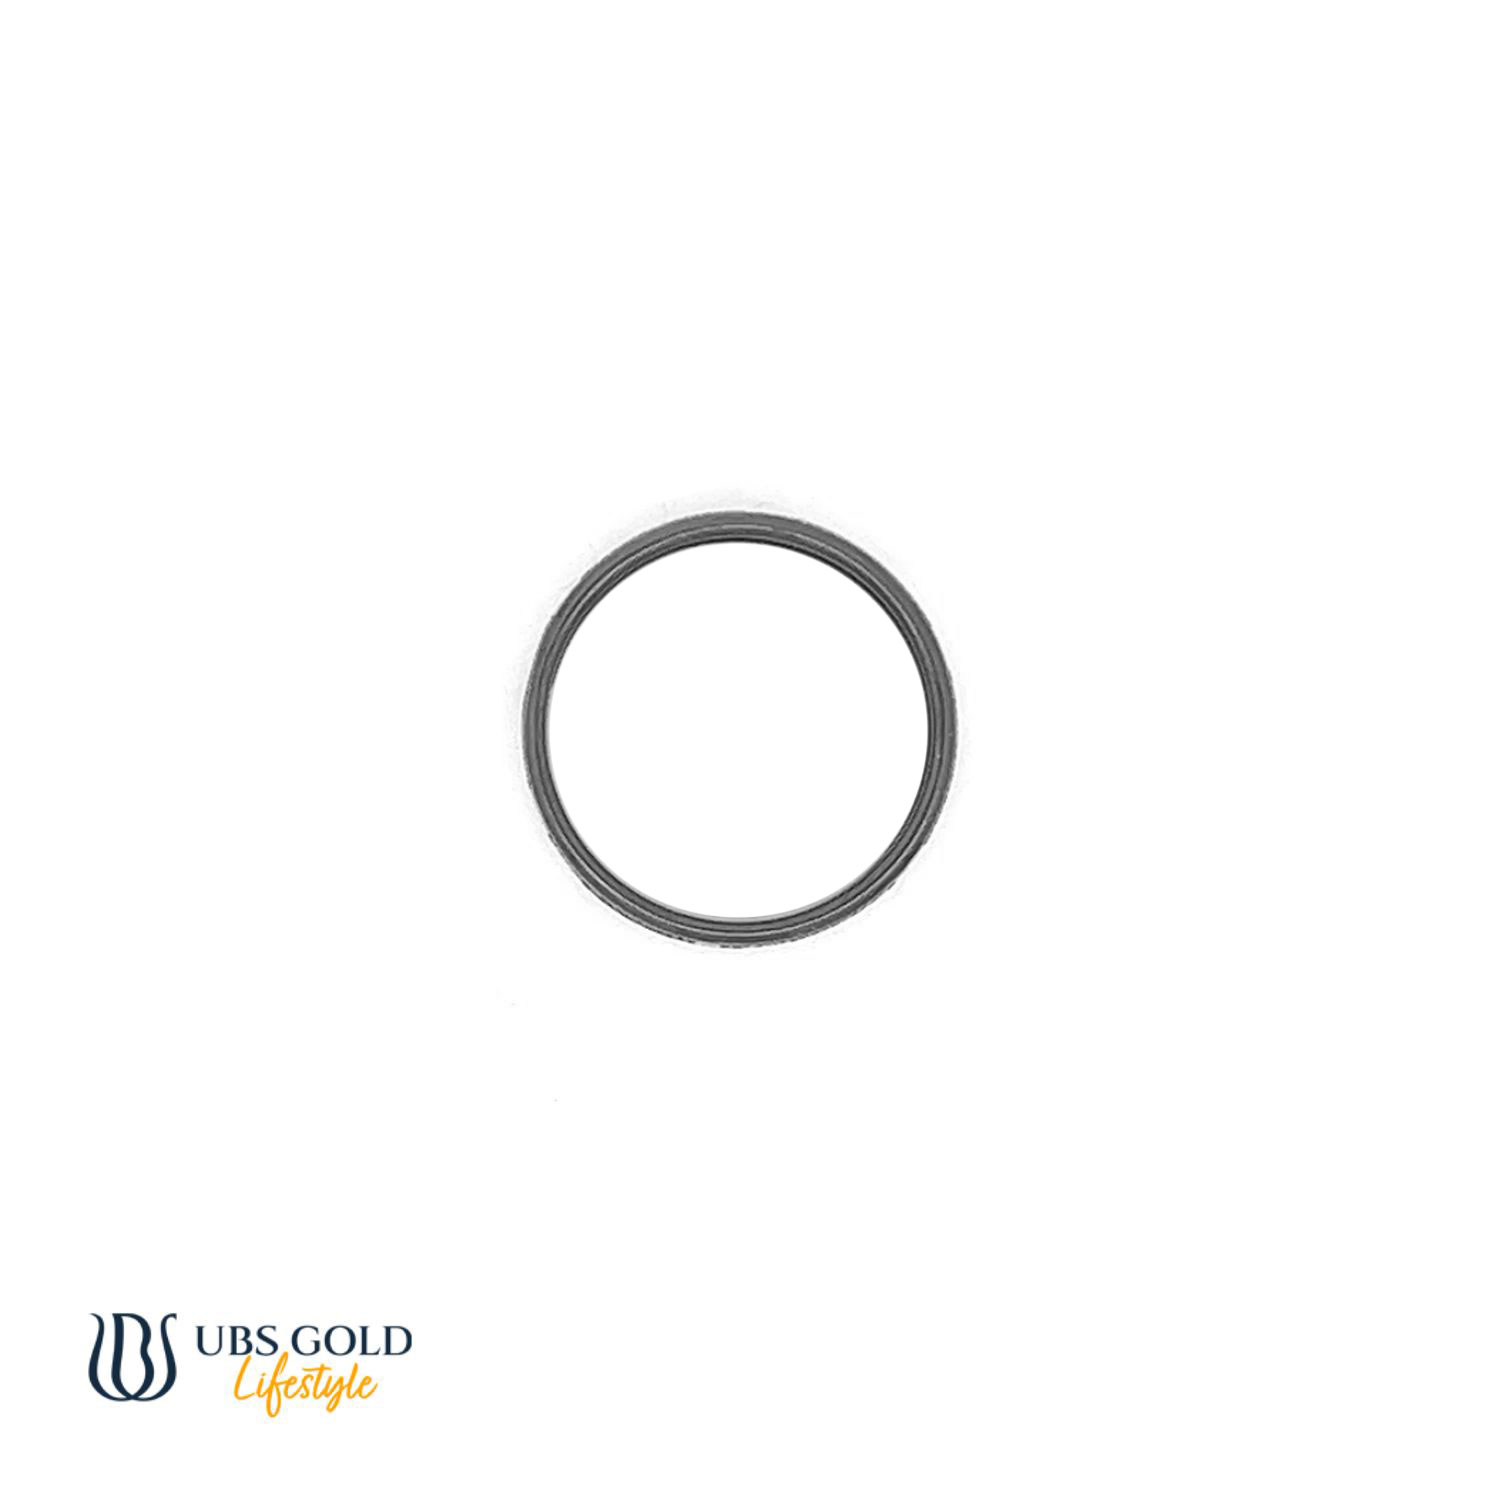 UBS Gold Cincin Emas - Tcfn000004 - 17K